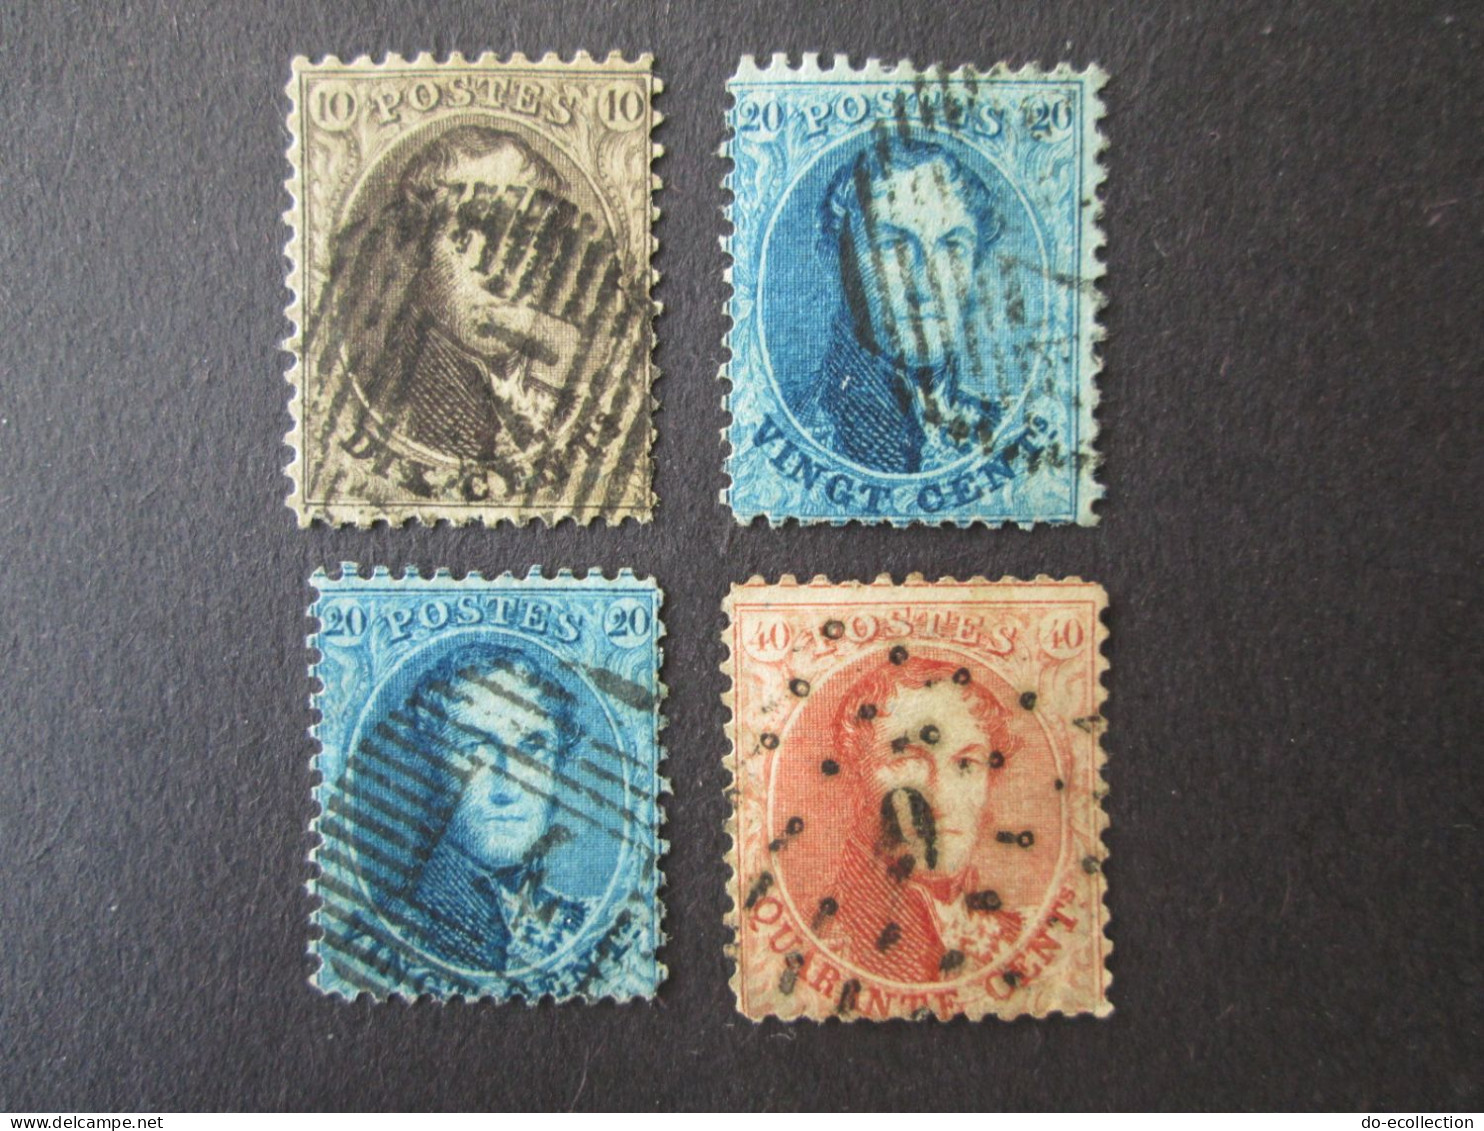 BELGIQUE 1863 Lot De 4 Timbres 10c 20c 40c Perf 12 1/2 Leopold I Dont Oblitération 4/9 Belgie Belgium Timbre Stamps - 1863-1864 Médaillons (13/16)